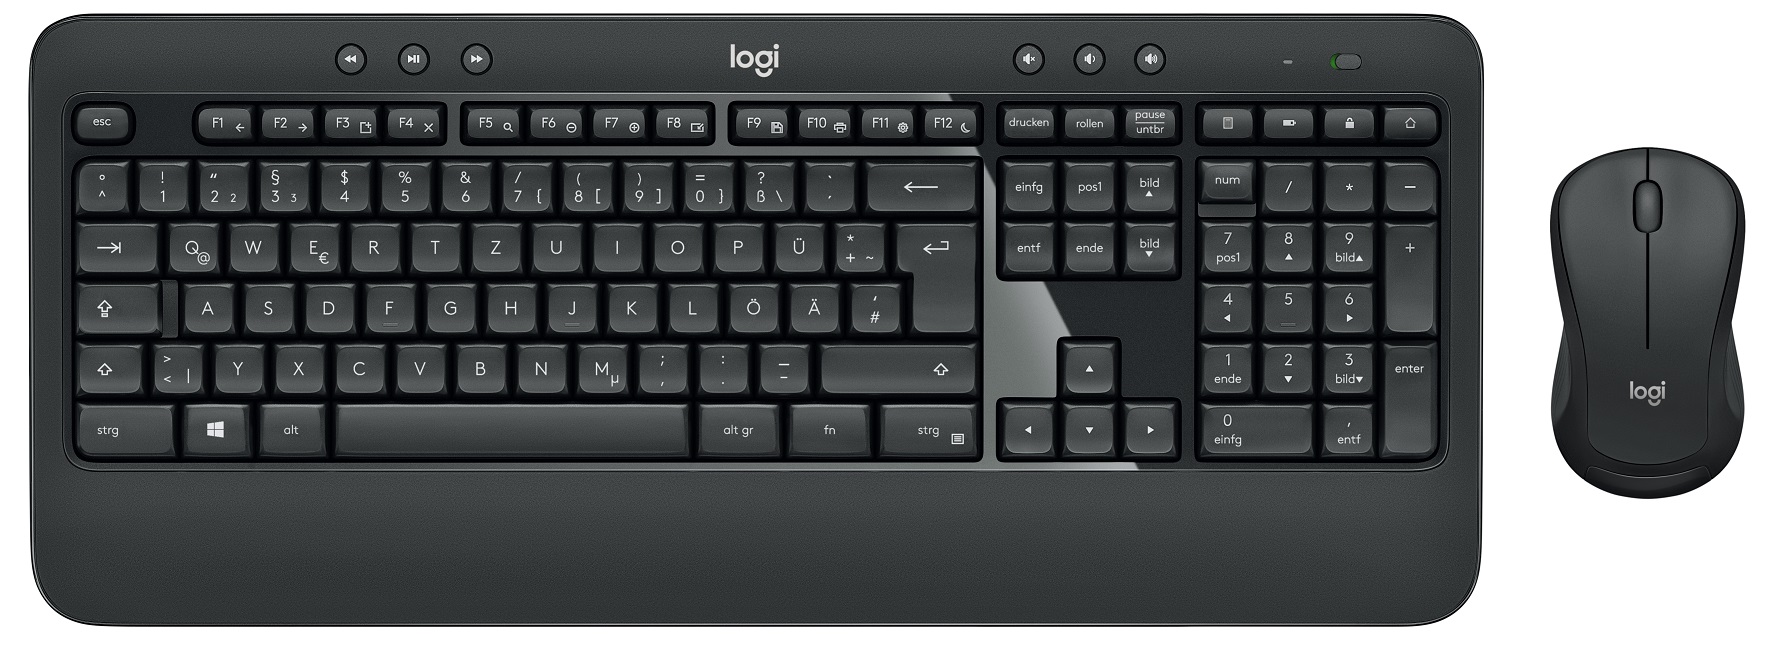 Logitech Advanced Wireless Keyboard and Mouse Combo, Black - MK540